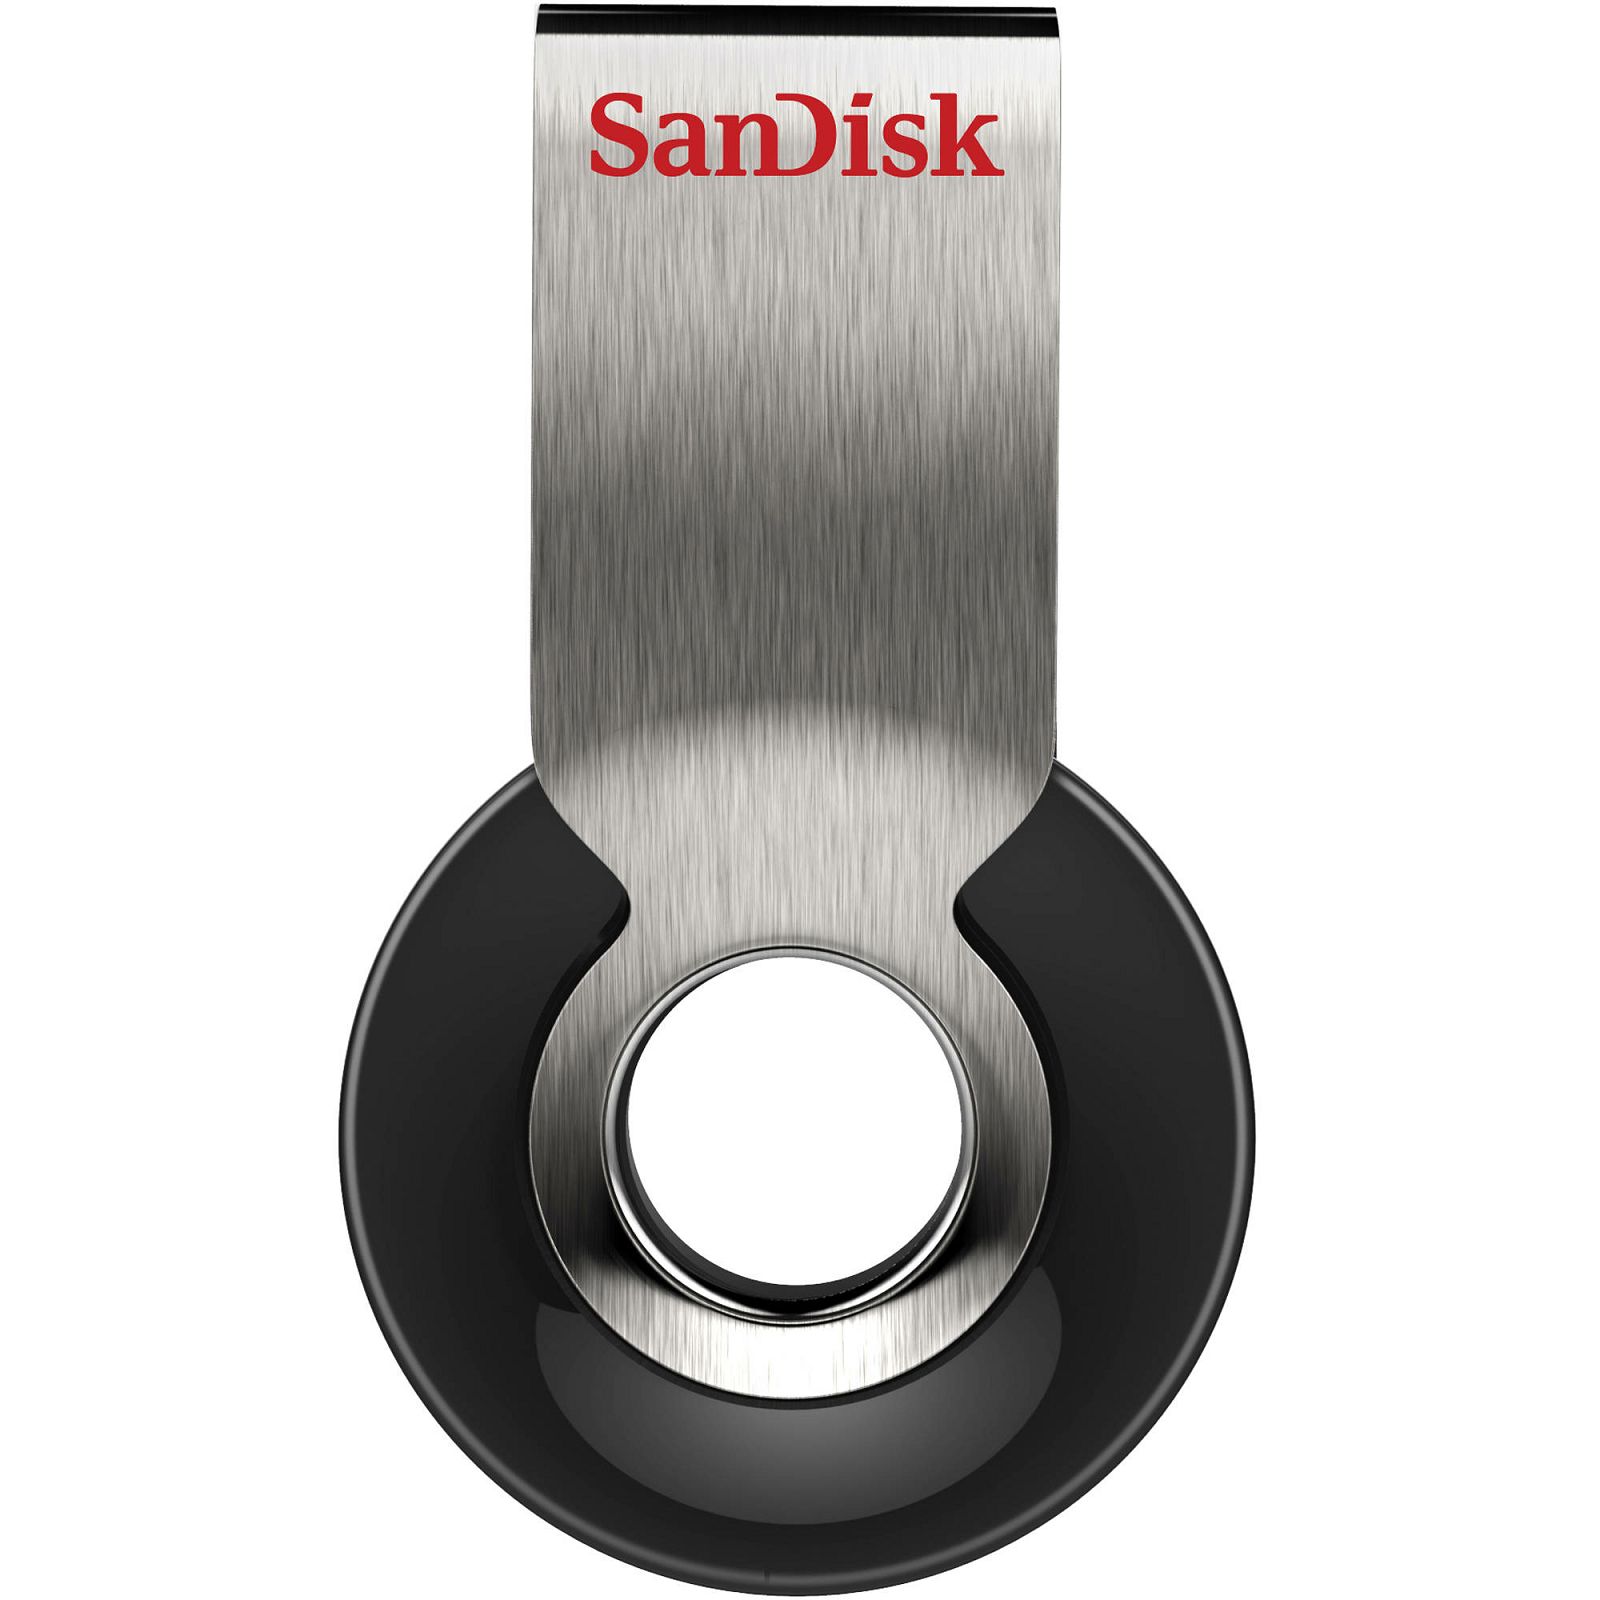 SanDisk Cruzer Orbit 4GB SDCZ58-004G-B35 USB Memory Stick